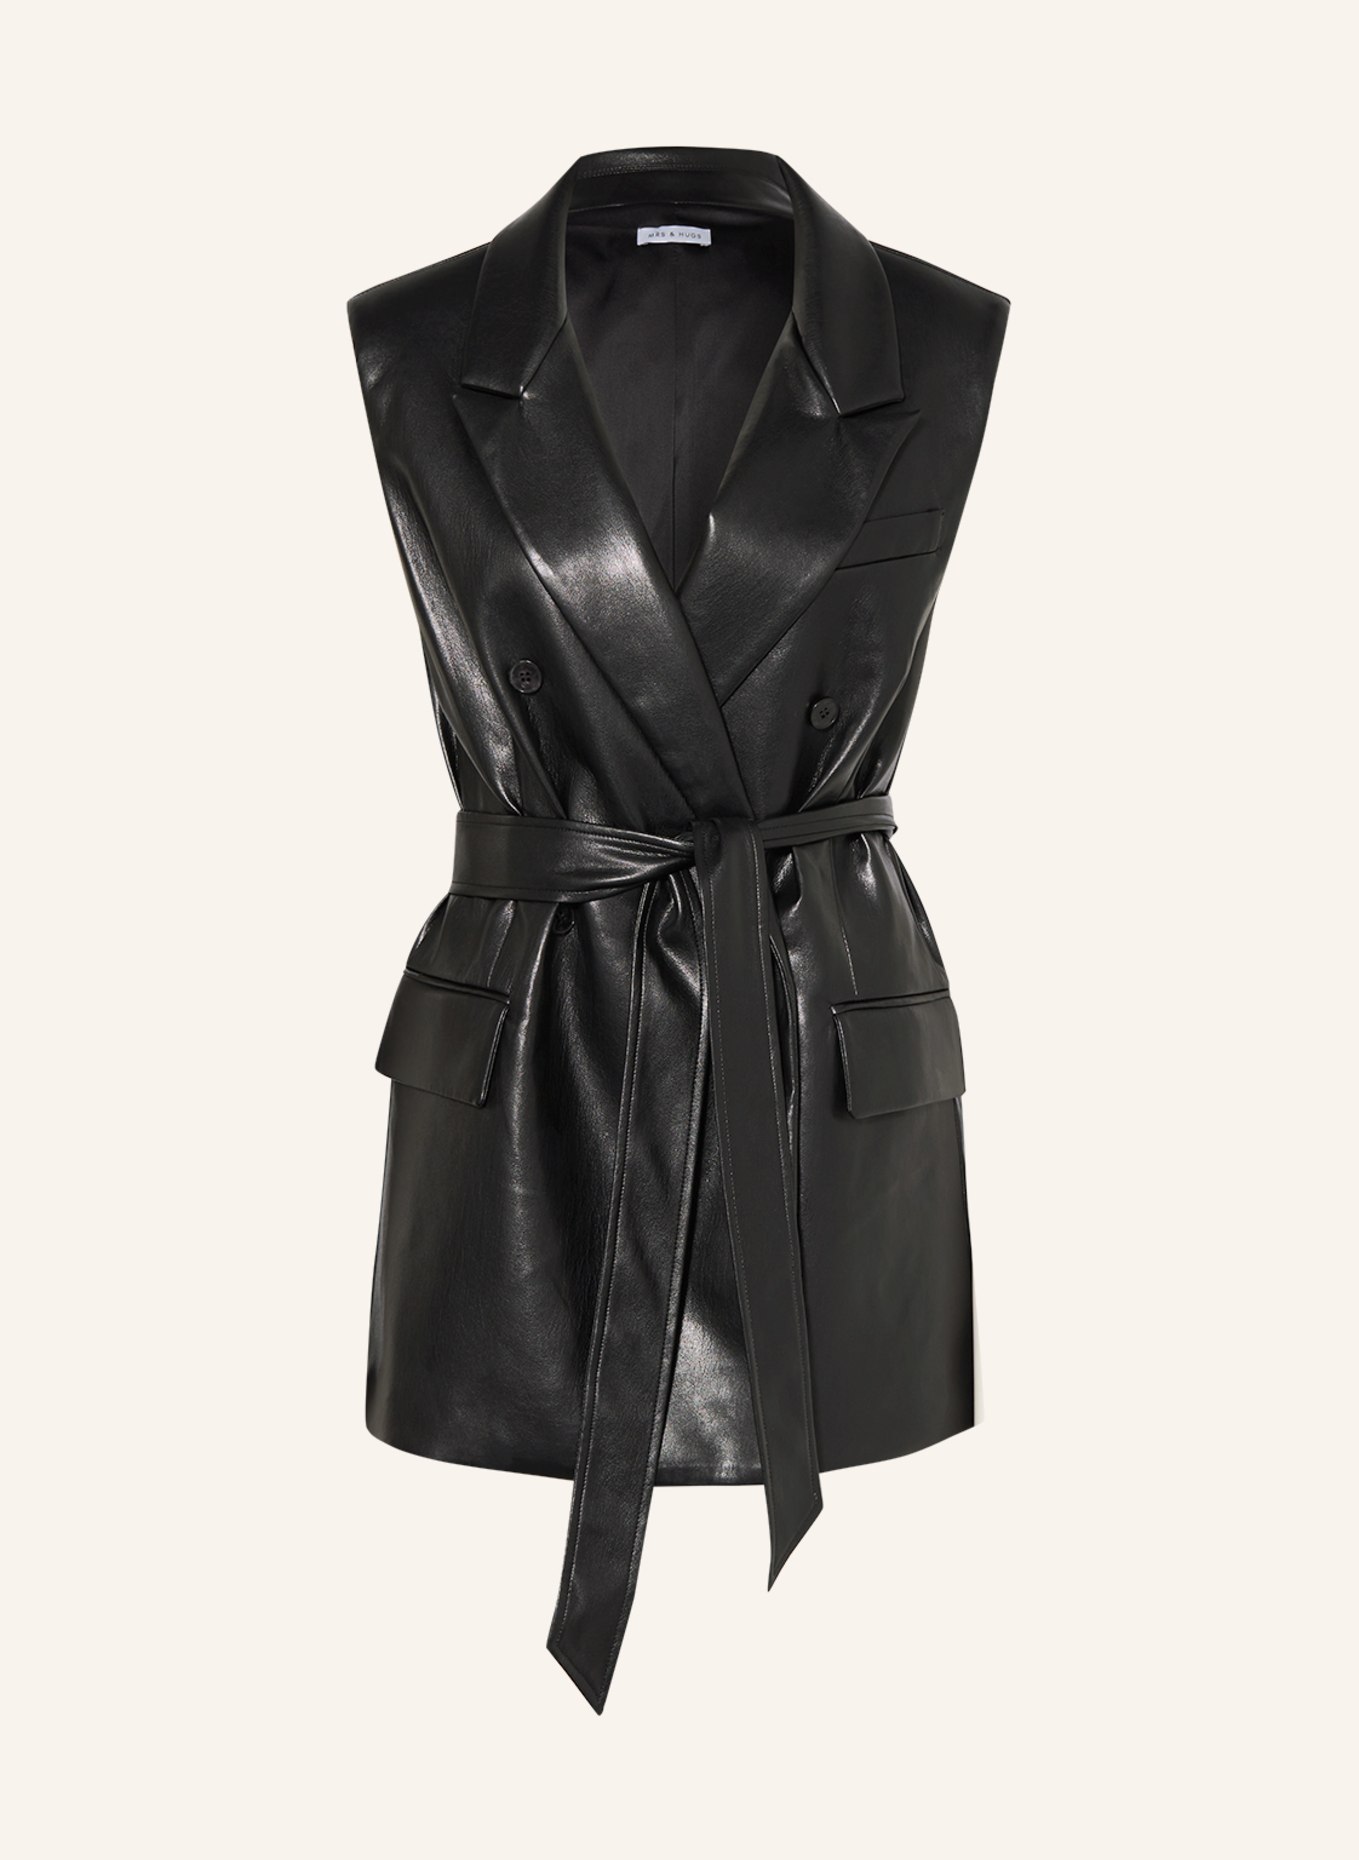 MRS & HUGS Blazer vest in leather look, Color: BLACK (Image 1)